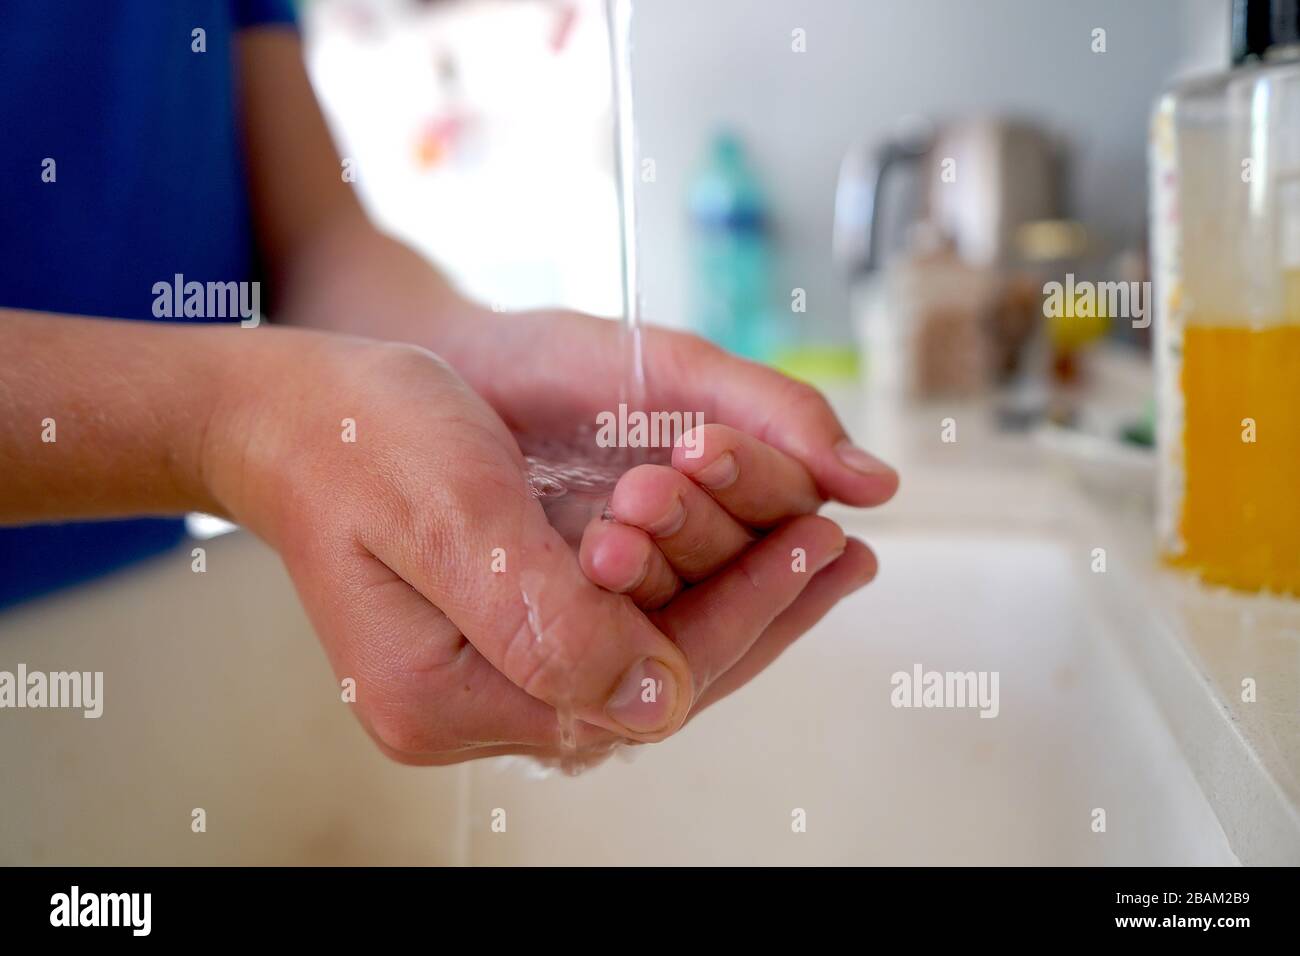 Lavarse las manos del niño con jabón bajo el grifo de la cocina Foto de stock